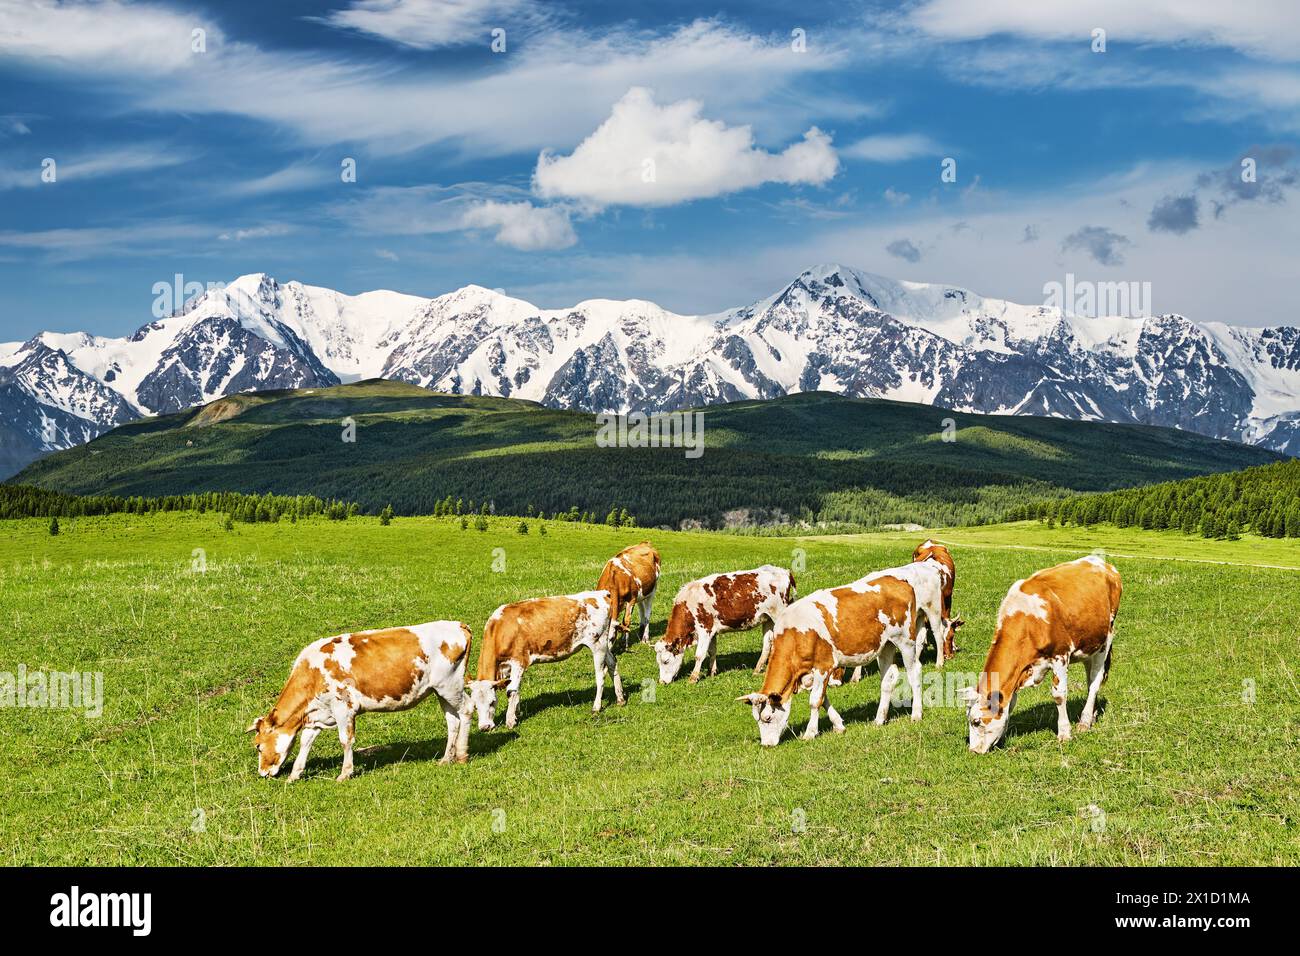 Beau paysage avec des montagnes enneigées et des vaches en pâturage sur un champ verdoyant Banque D'Images